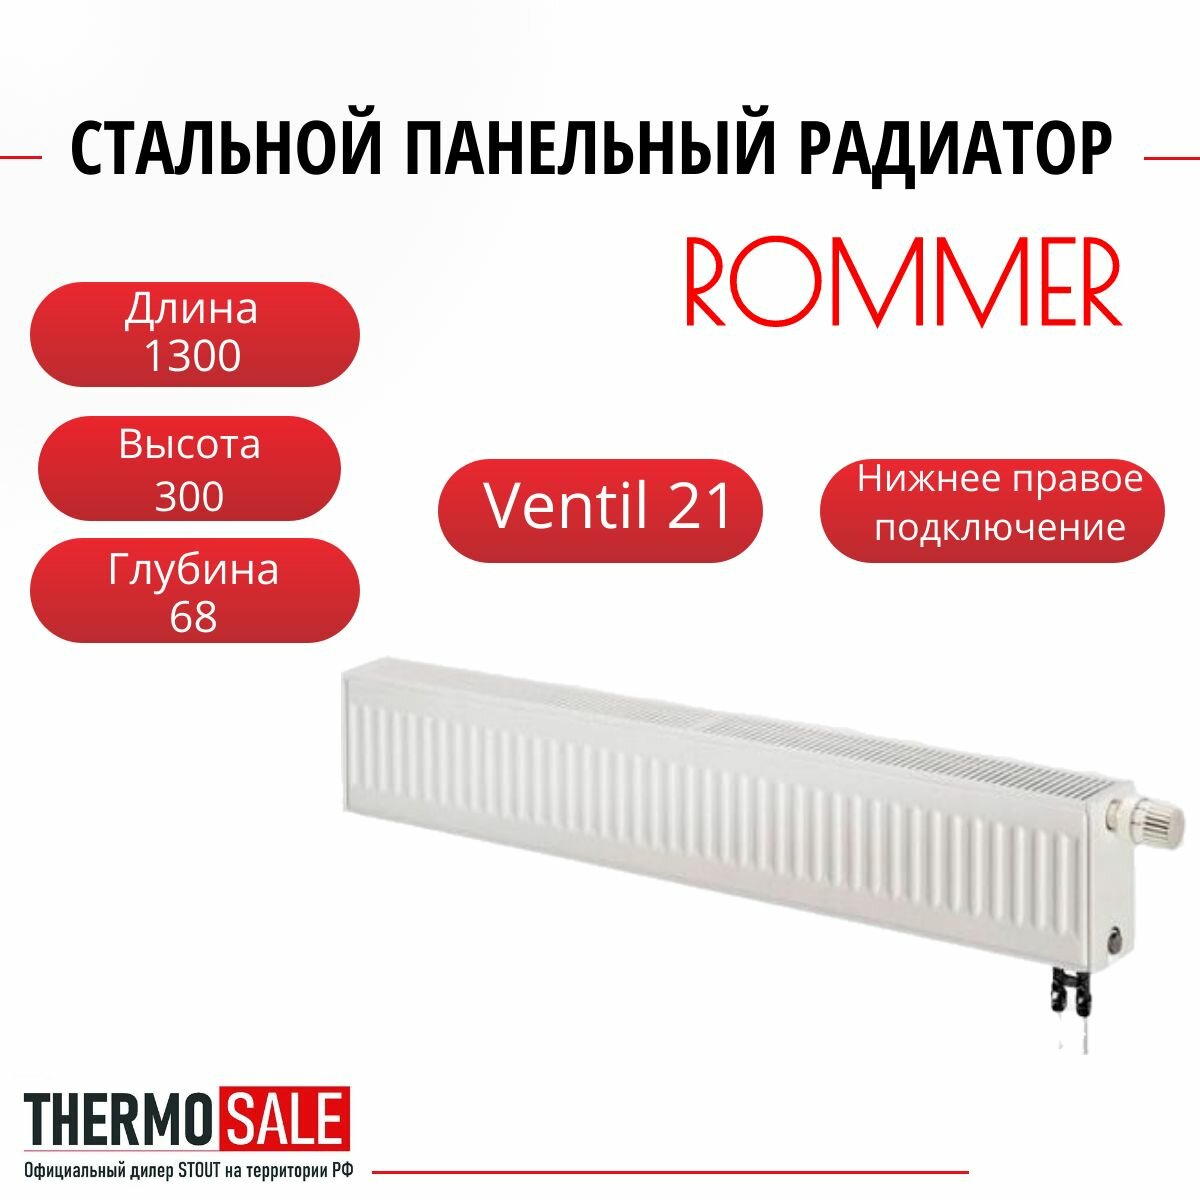 Радиатор стальной панельный ROMMER 300х1300 нижнее правое подключение Ventil 21/300/1300 RRS-2020-213130